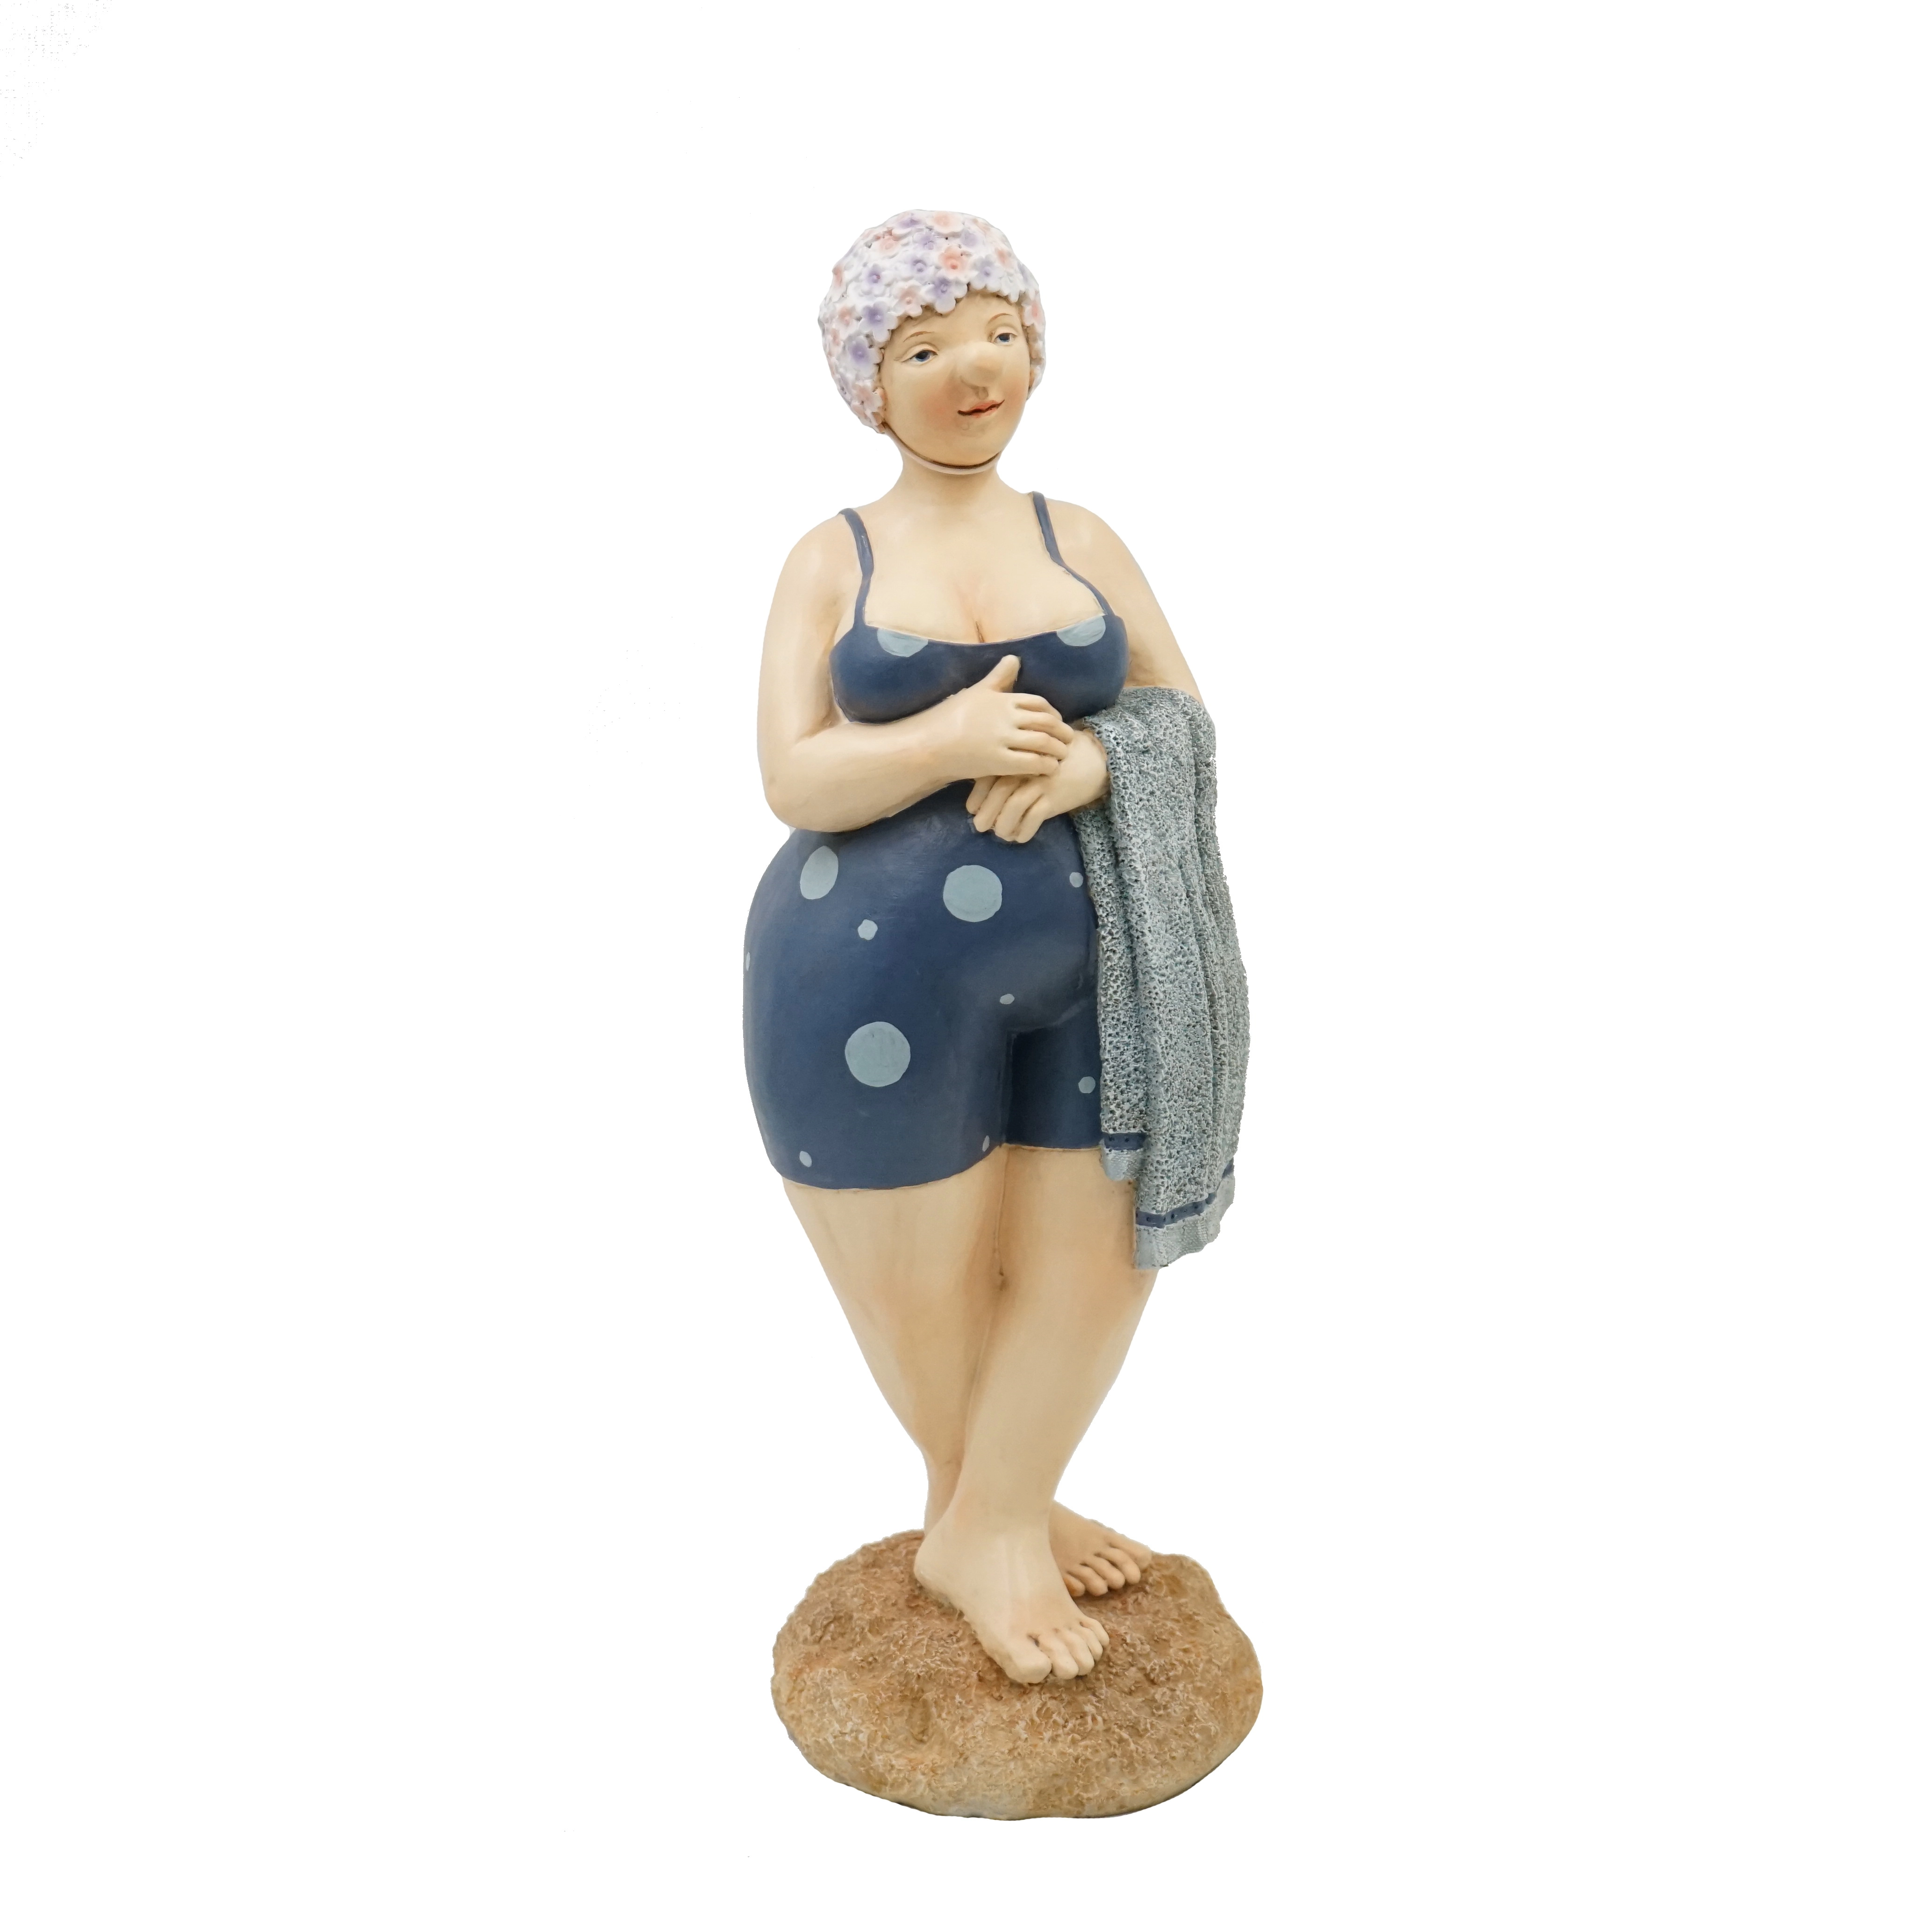 Statuetta da giardino divertente in resina, statua della signora in costume da bagno